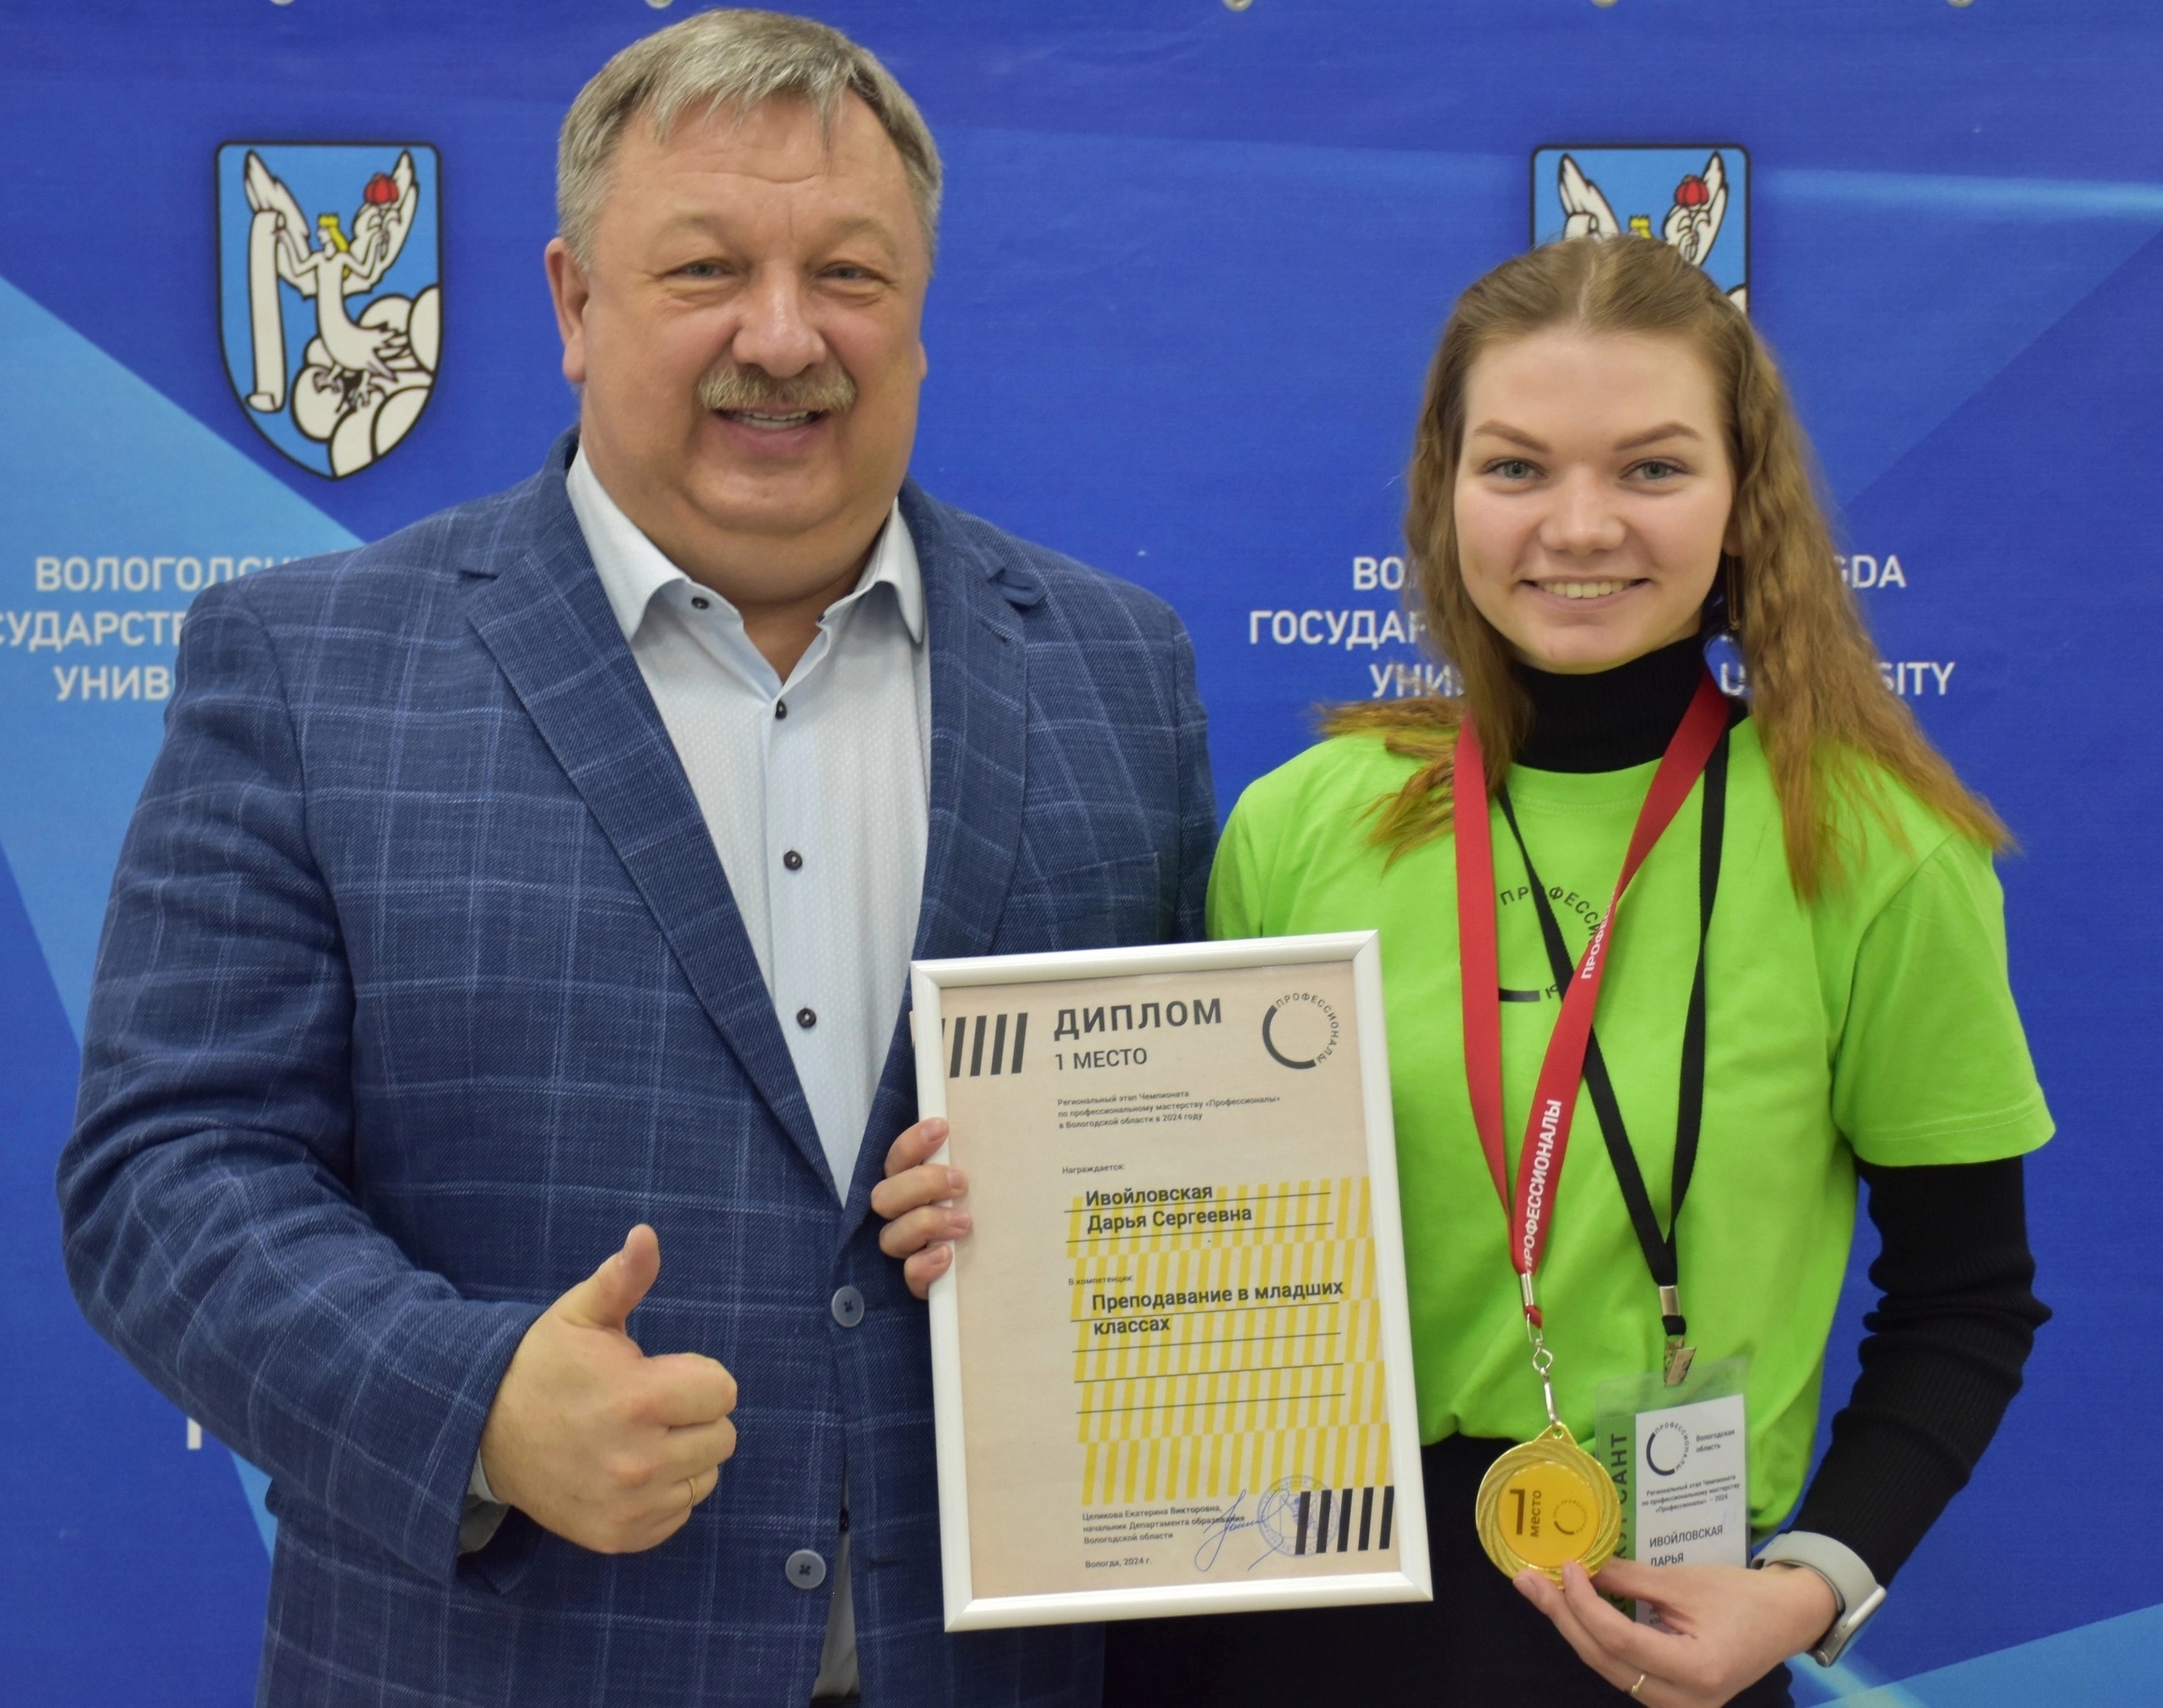 Выпускница Верховажской средней школы стала победителем регионального этапа чемпионата «Профессионалы» в компетенции &quot;Преподавание в младших классах&quot;.